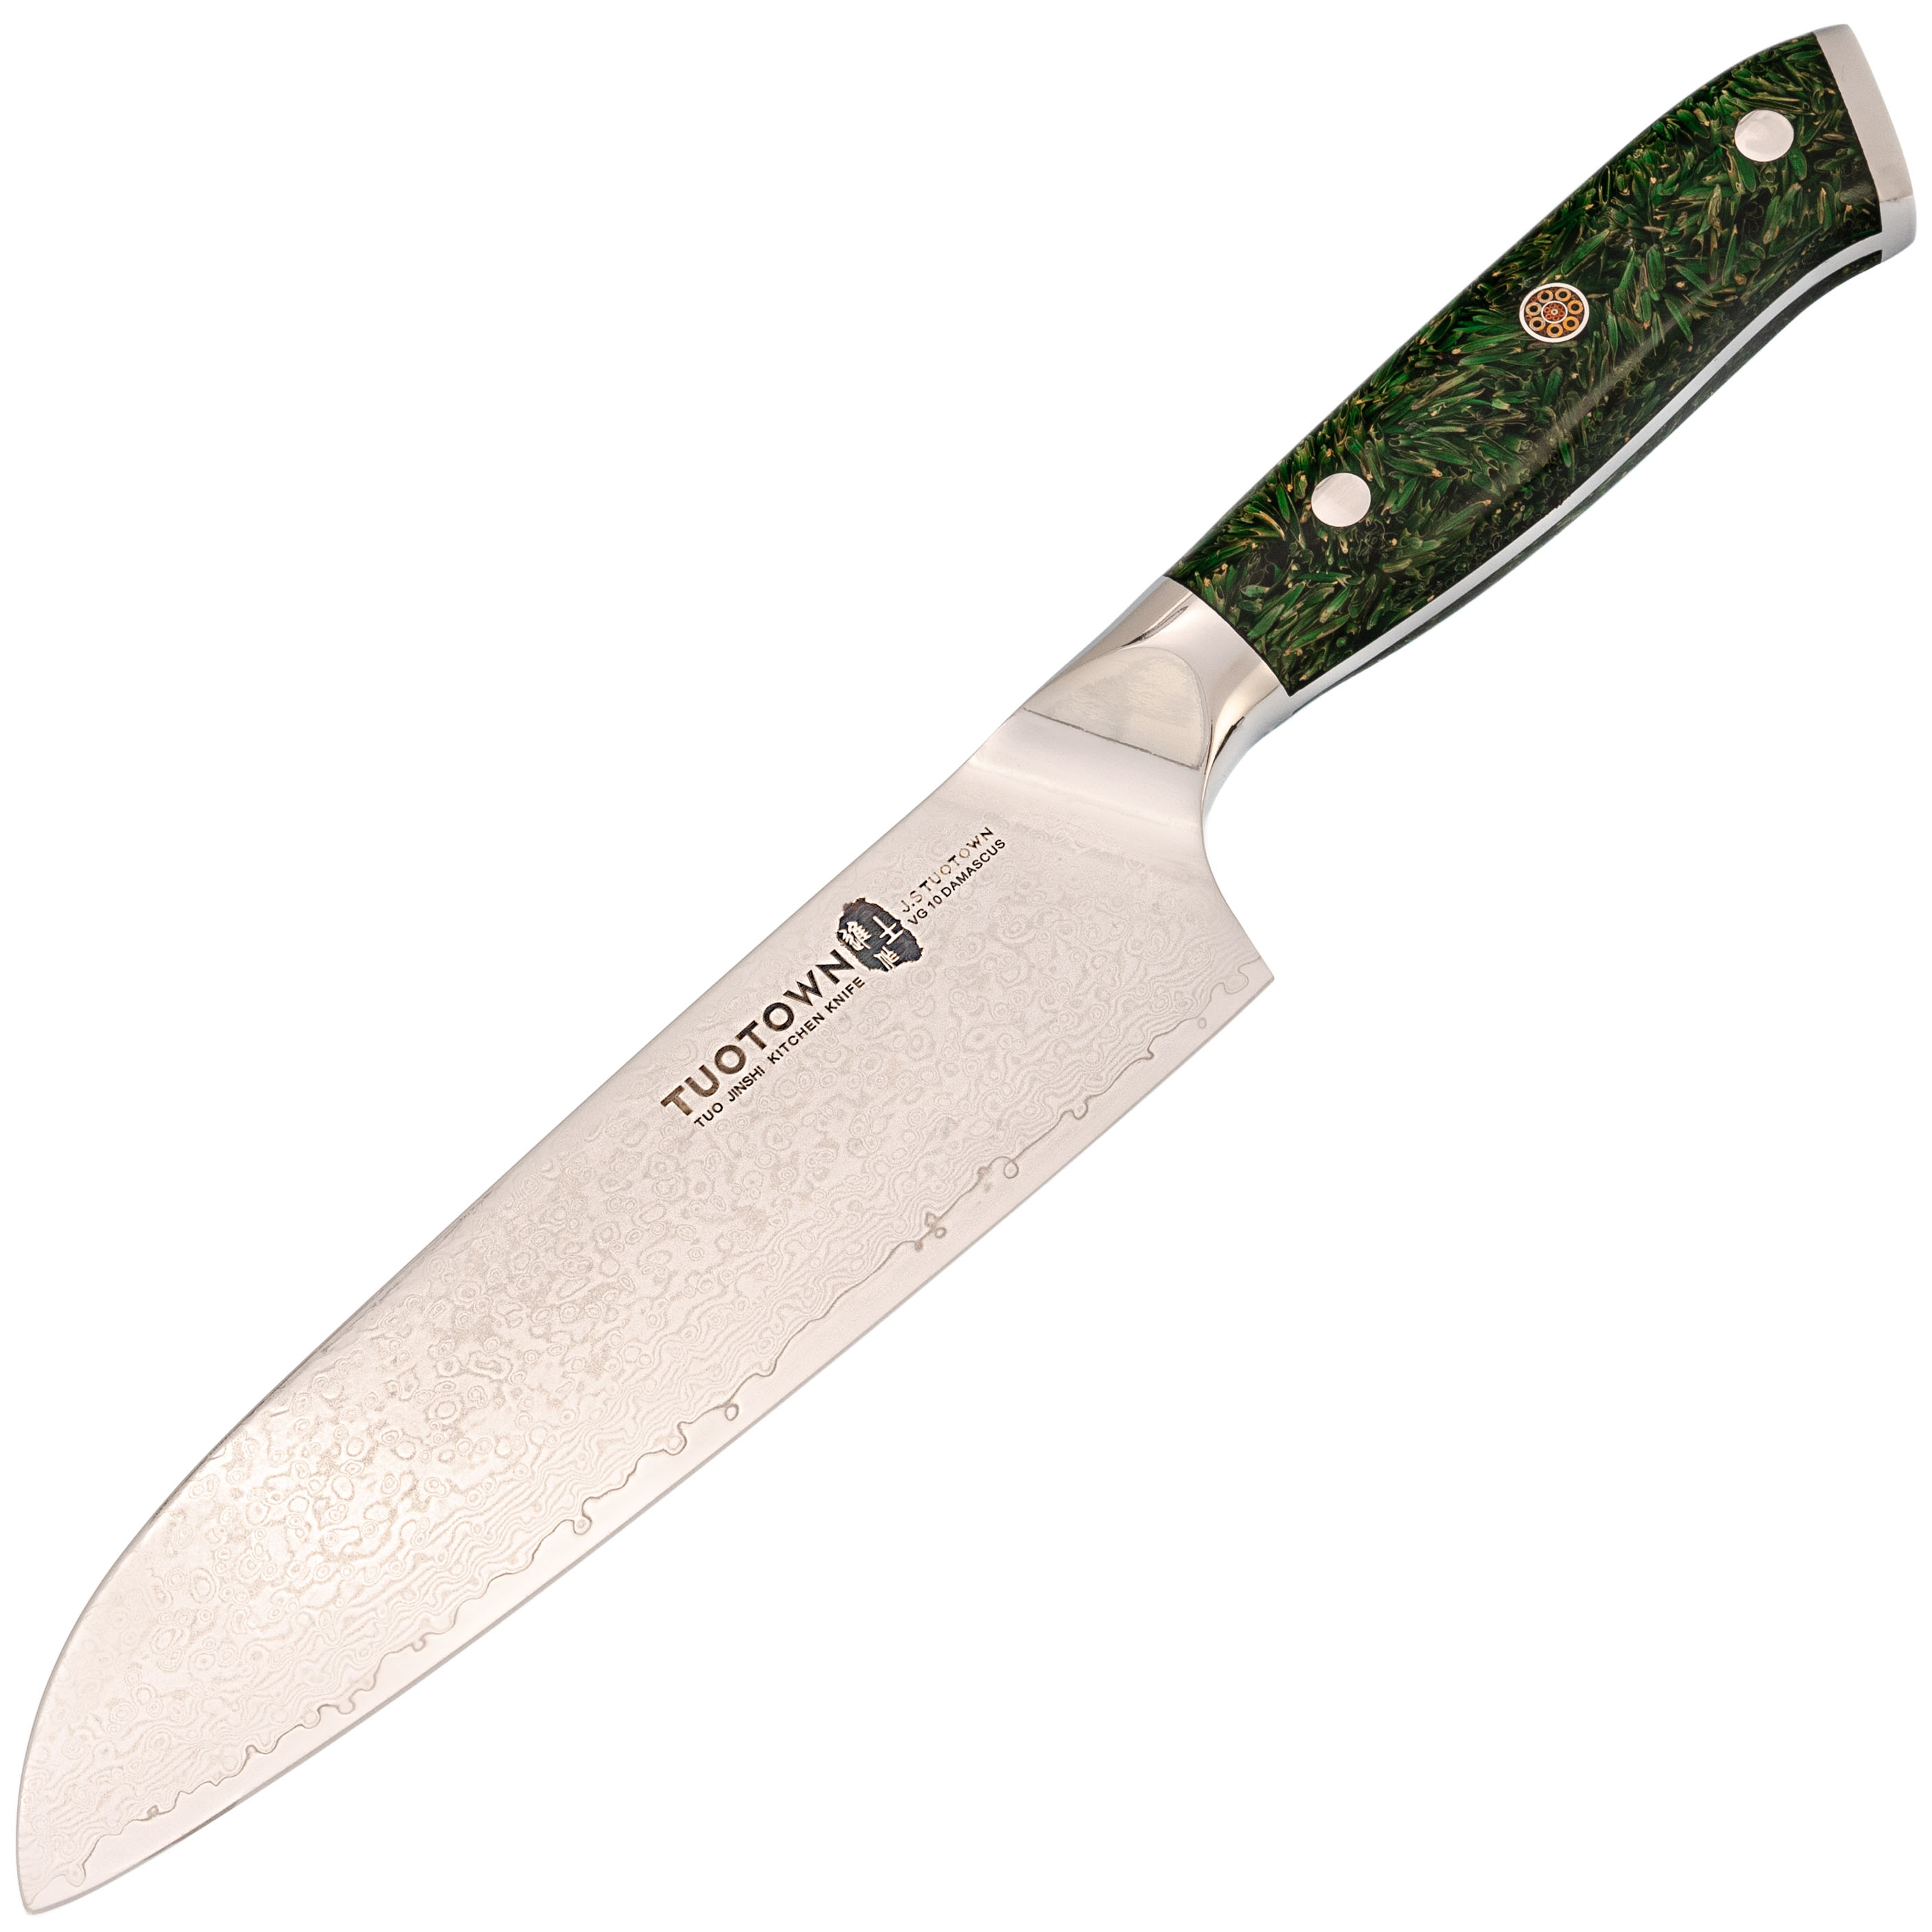 Кухонный нож Сантоку Tuotown, сталь VG10, обкладка Damascus, рукоять акрил, зеленый